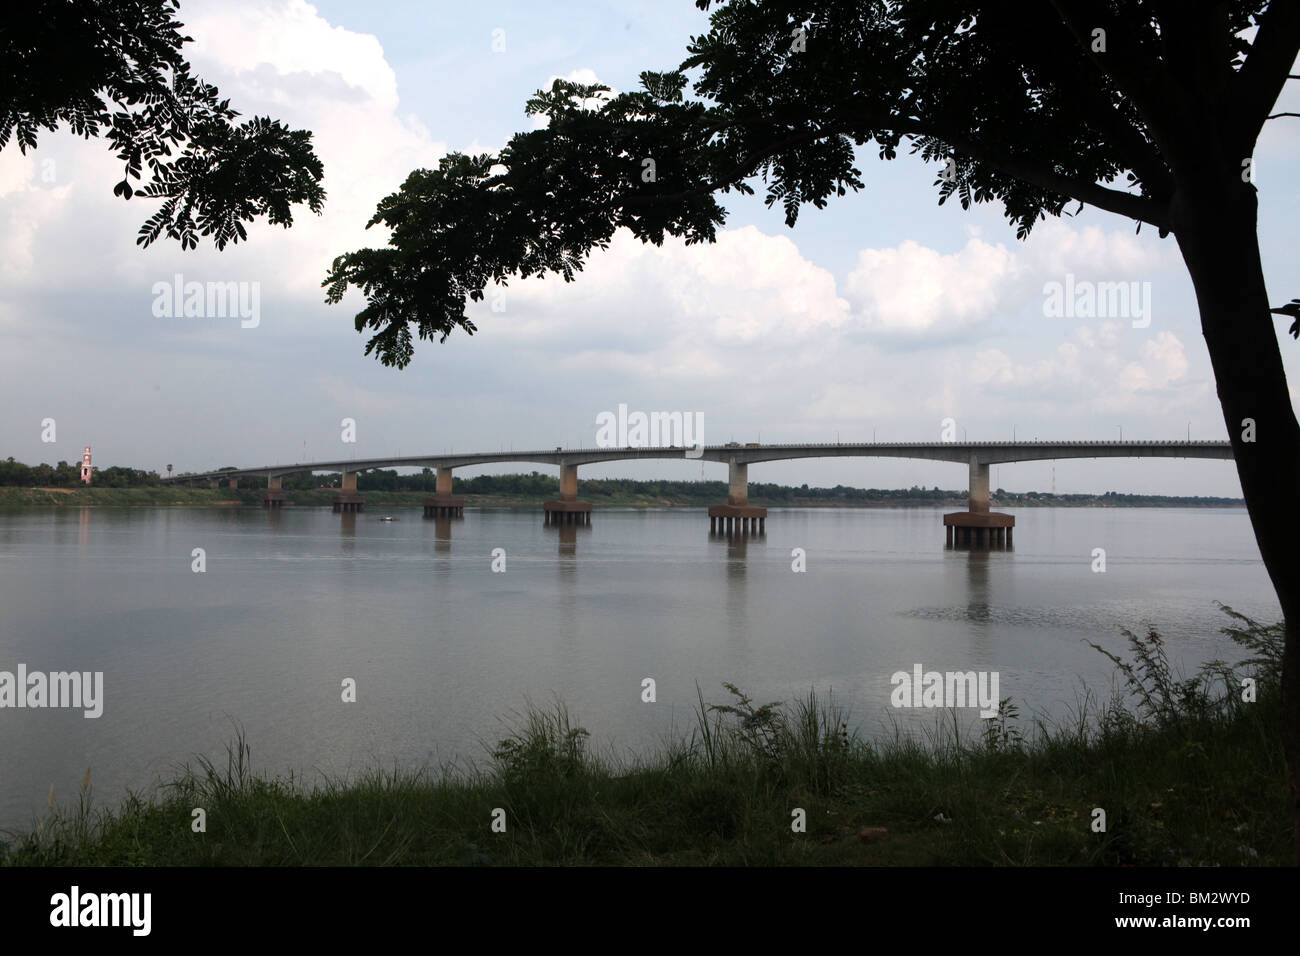 Die Kizuna Bridge, eröffnet im Jahr 2001, über den Mekong River während der trockenen Jahreszeit, Kampong Cham, Kambodscha. Stockfoto